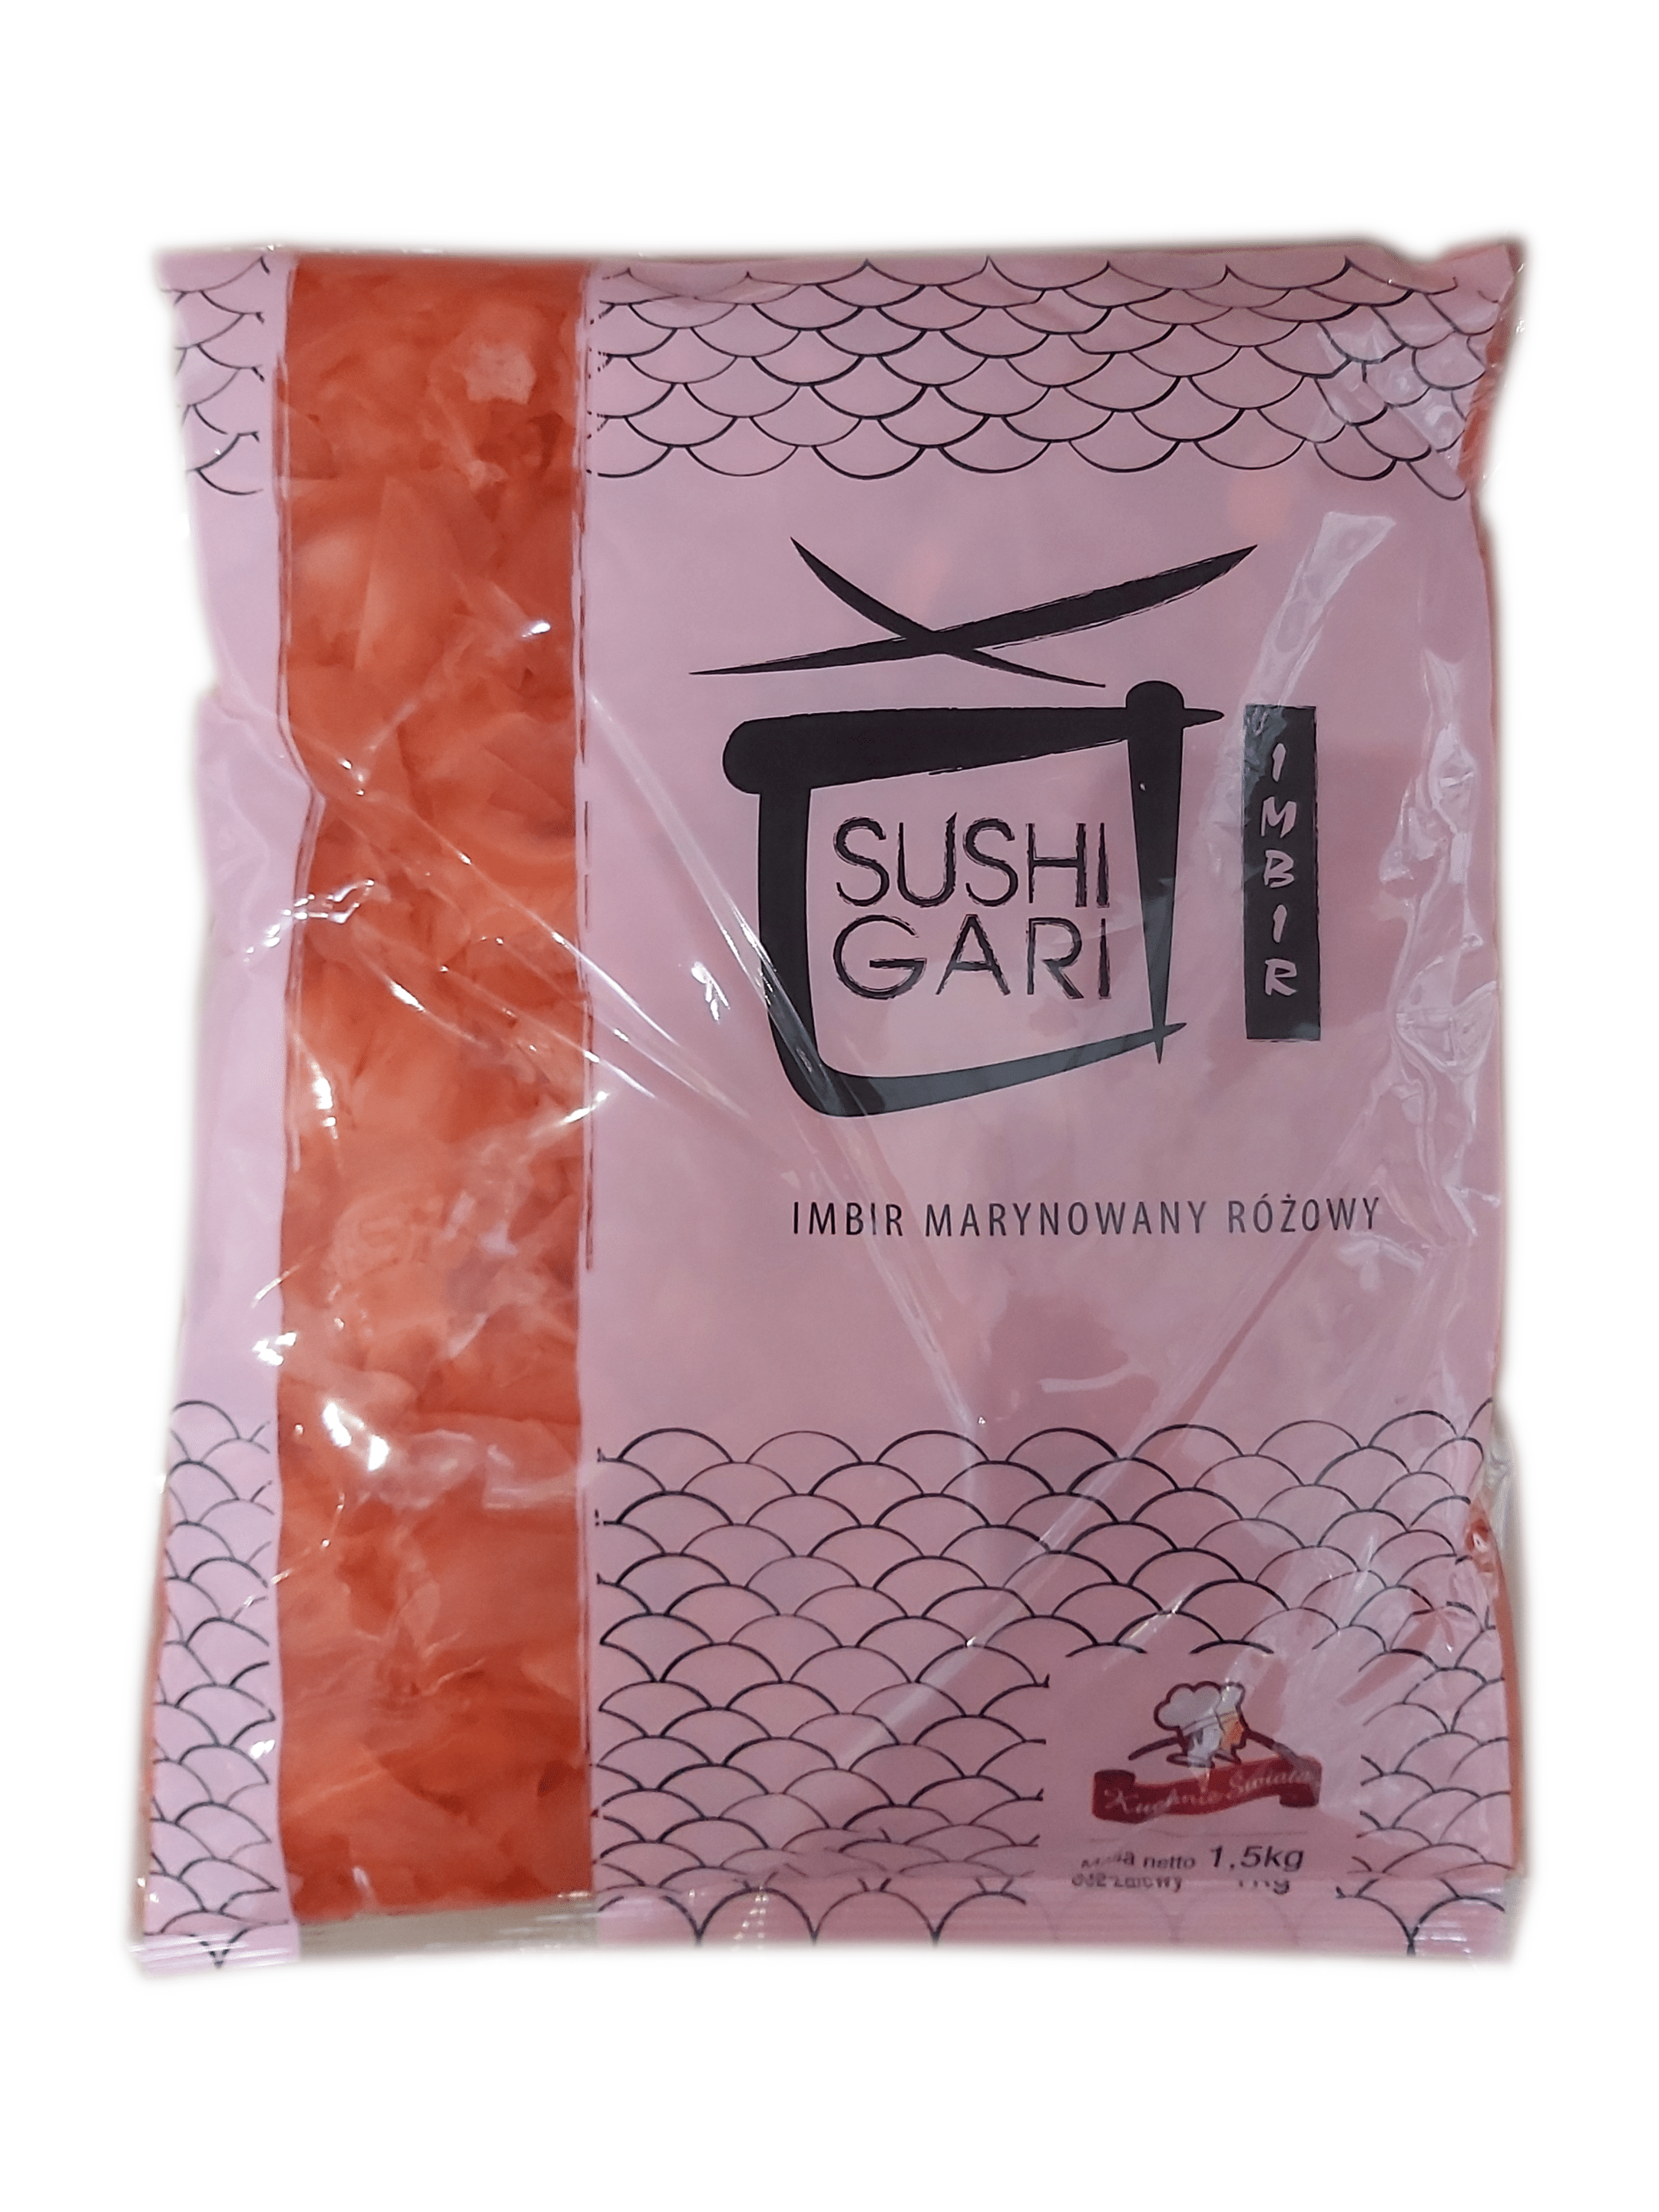 Imbir marynowany różowy Amazu Shoga 1kg netto, 1,5kg/10